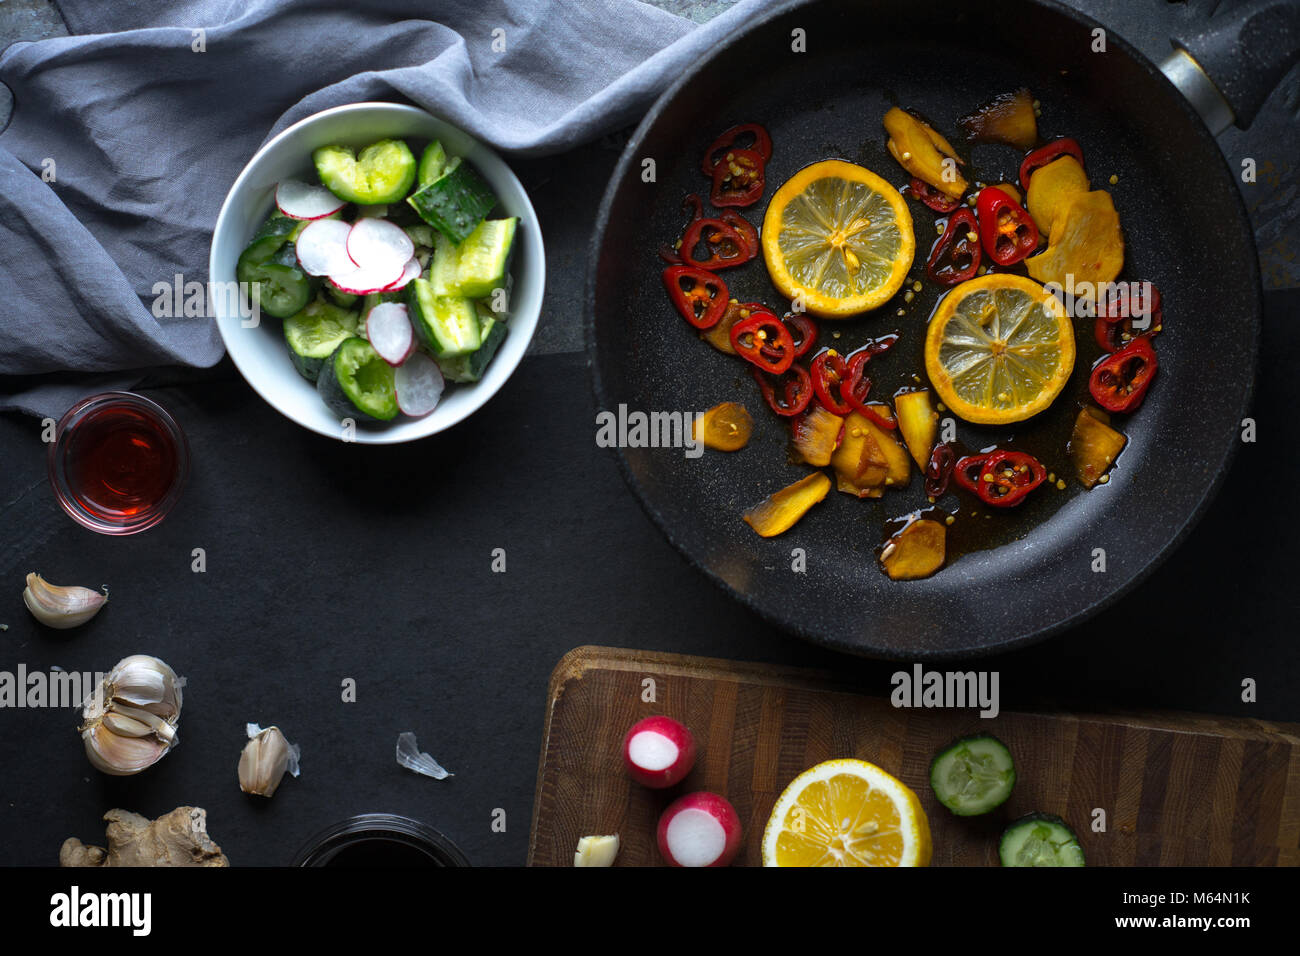 Geschirr und Gemüse für die Herstellung von Sushi freien Speicherplatz. Asiatische Küche horizontal Stockfoto